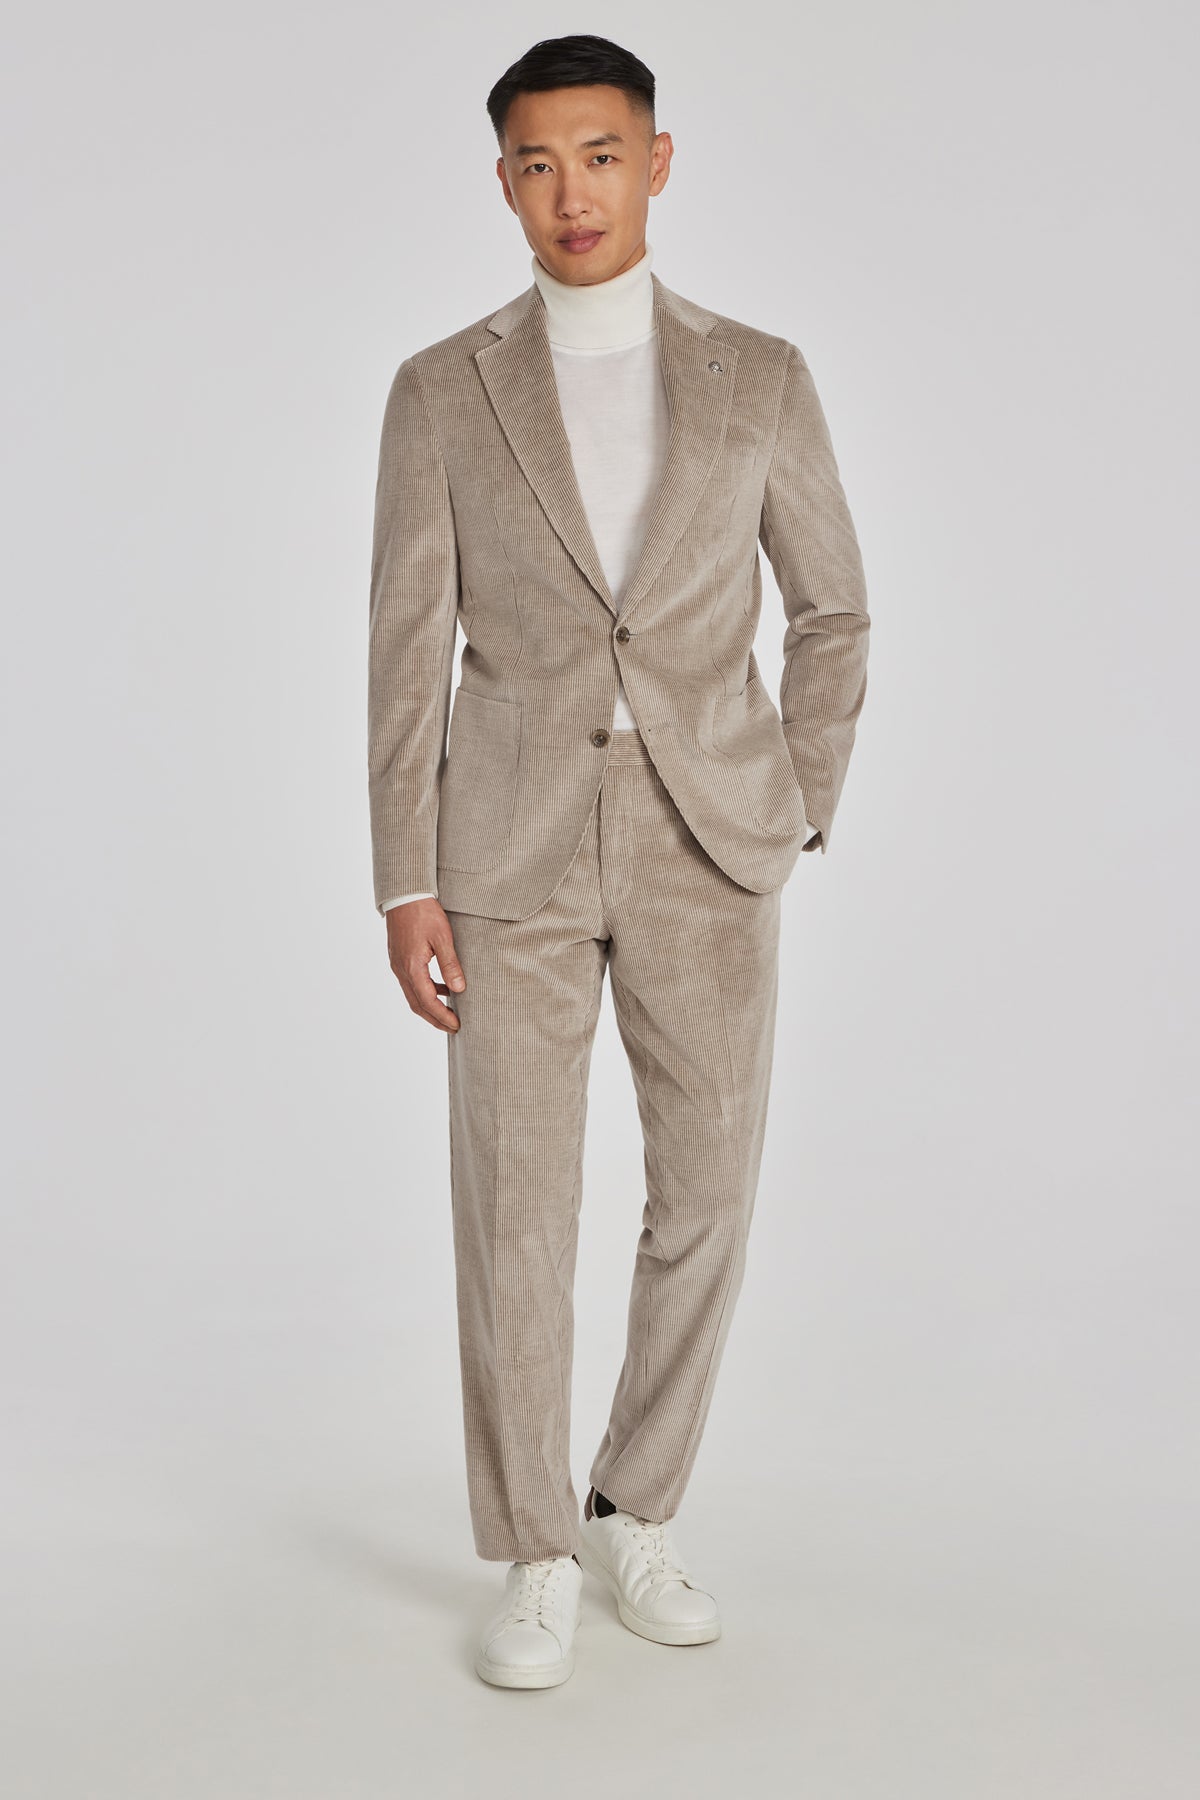 Alt view Myles Corduroy Cotton, Cashmere Stretch Suit in Tan